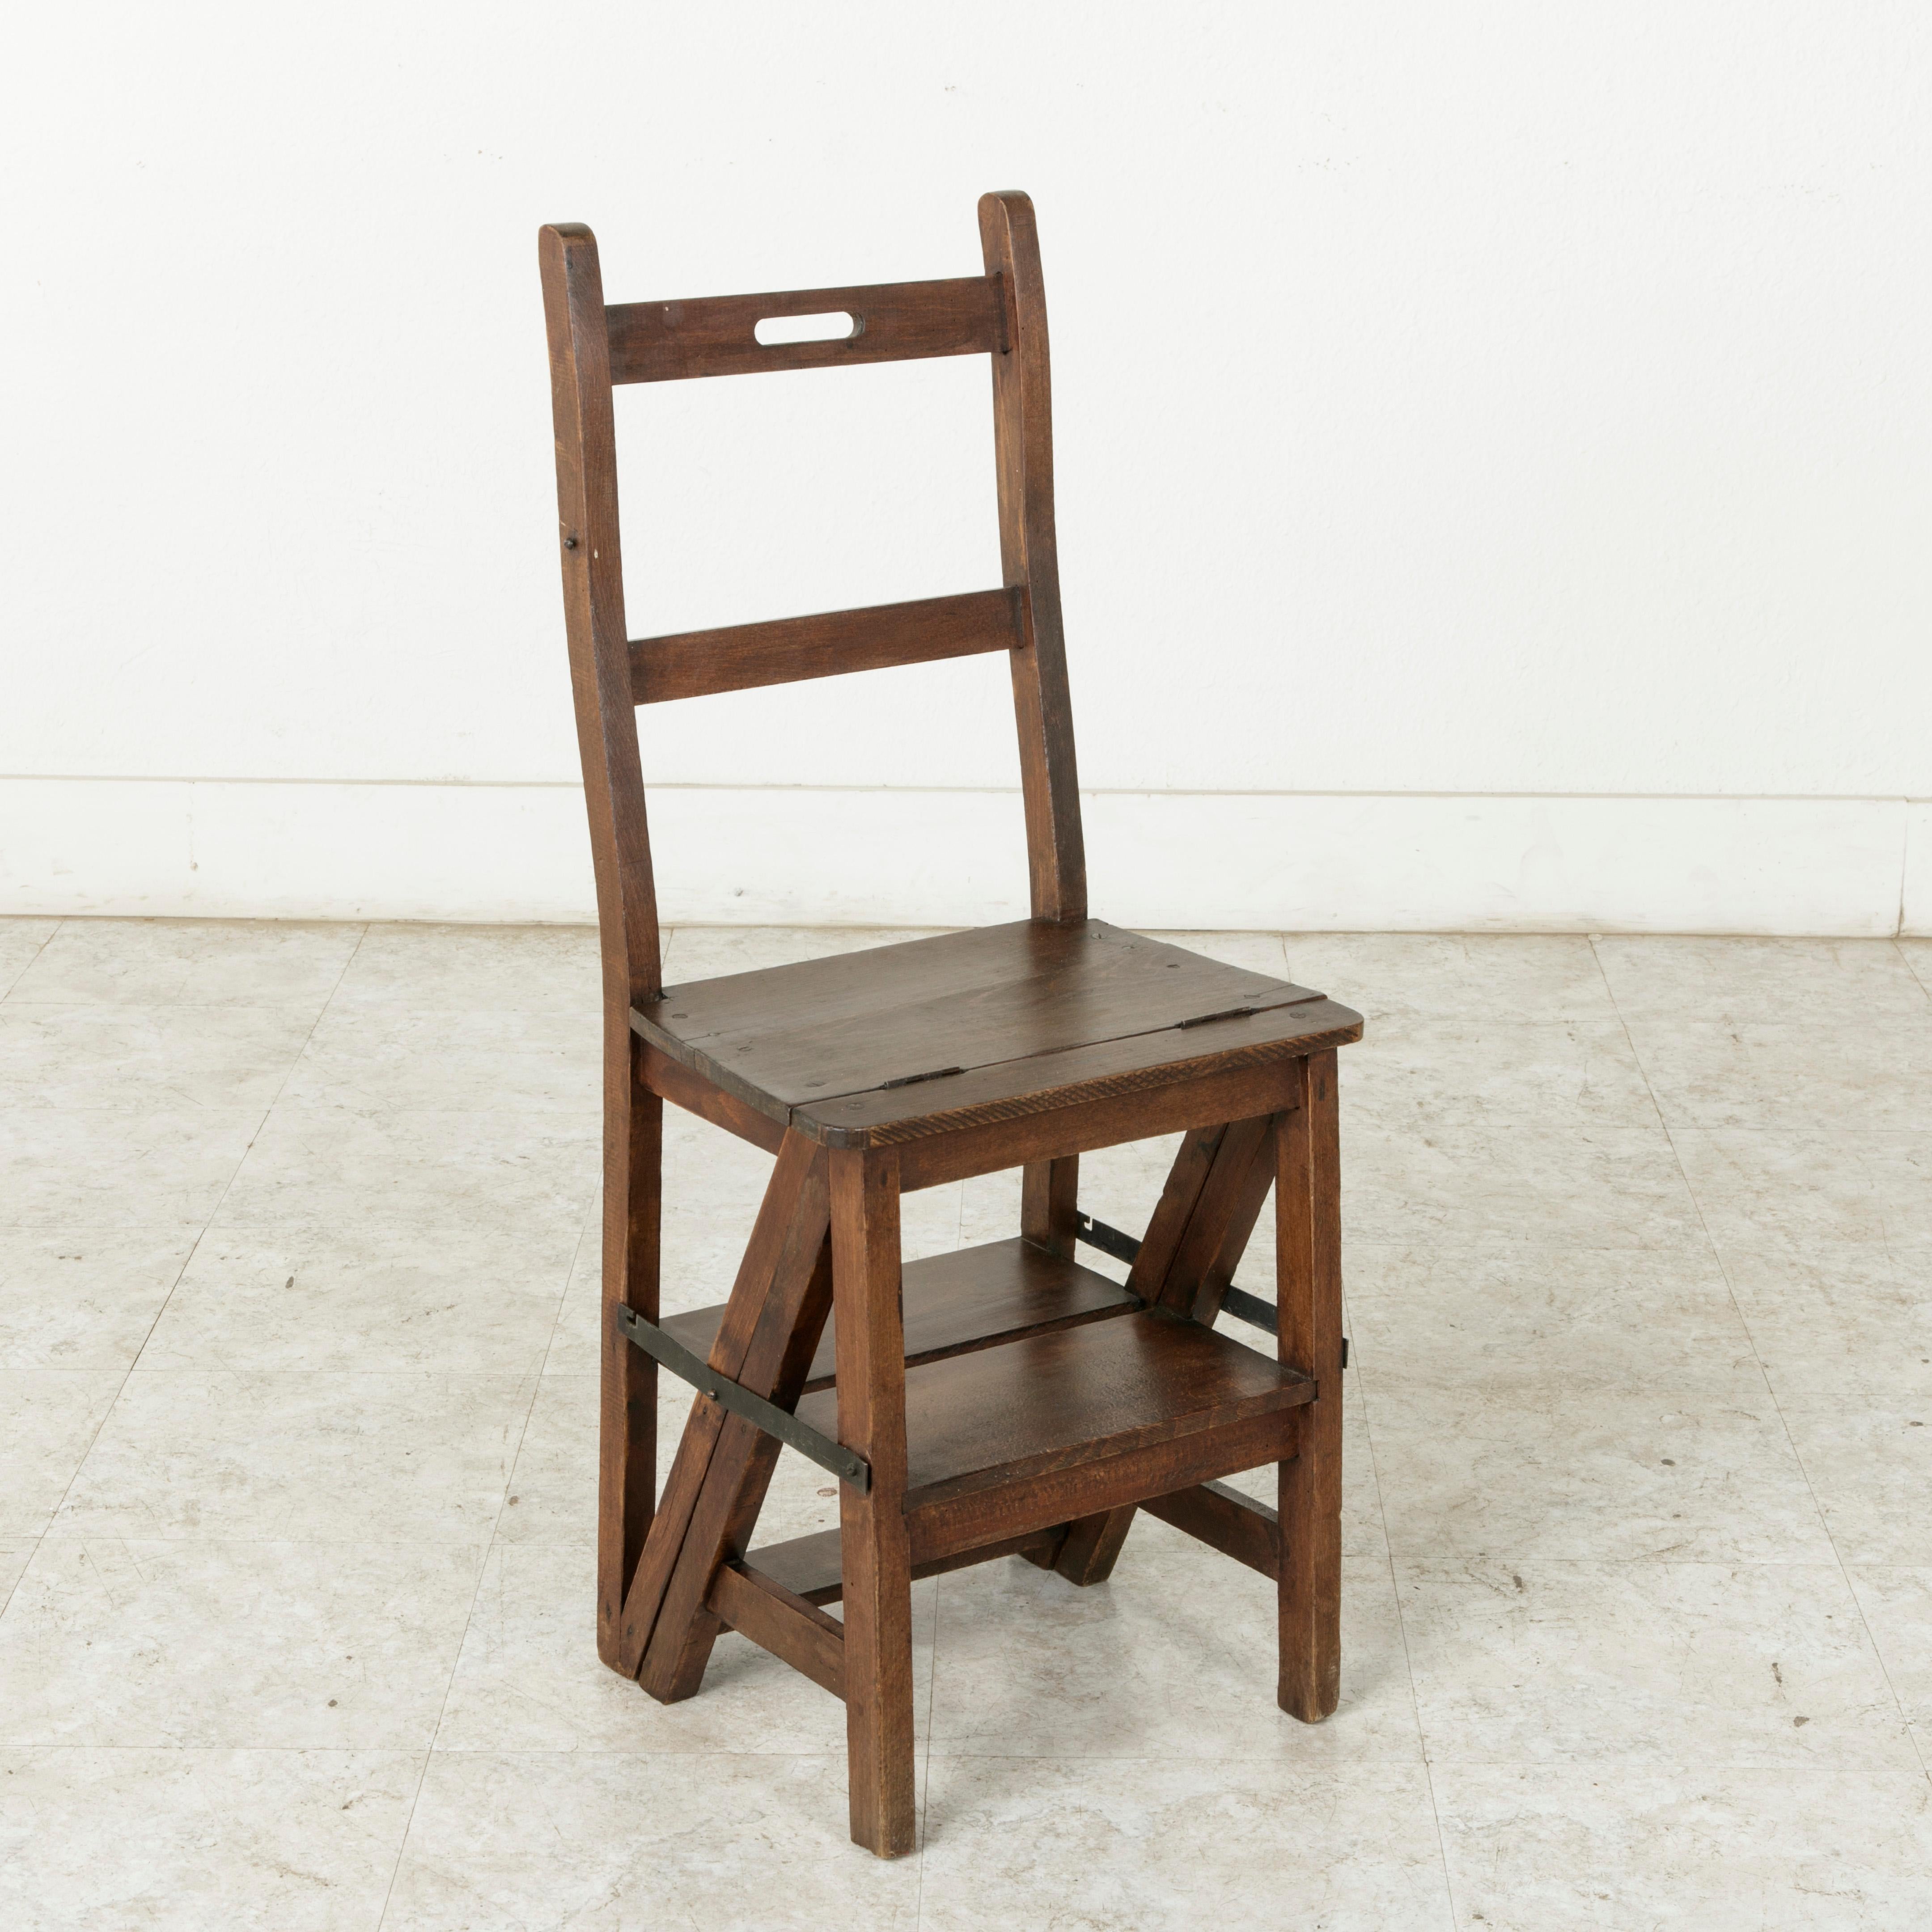 Dieser handwerklich gefertigte Klappstuhl aus Eichenholz stammt aus der südfranzösischen Provence und lässt sich mit einem Scharnier in eine Leiter verwandeln. Eisengurte mit Haken ermöglichen es:: das Stück sowohl als Stuhl als auch als Leiter zu